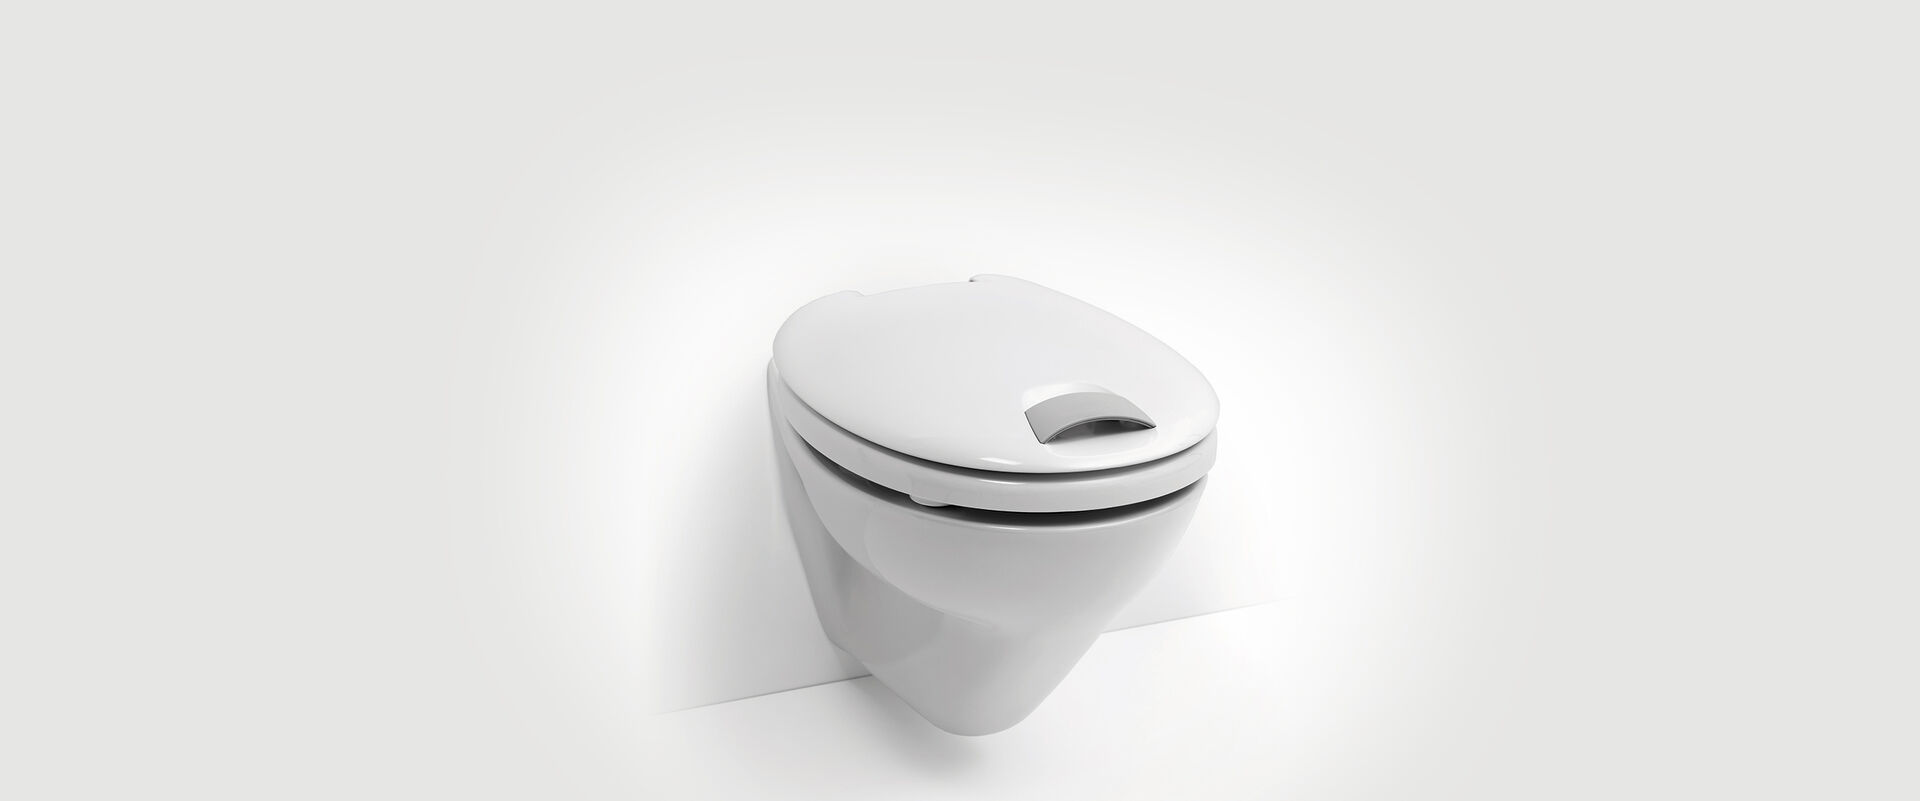 WC-Sitz für mehr Komfort und Sicherheit - Haromed von Hamberger. Mit Grifflasche und Sitzerhöhung.